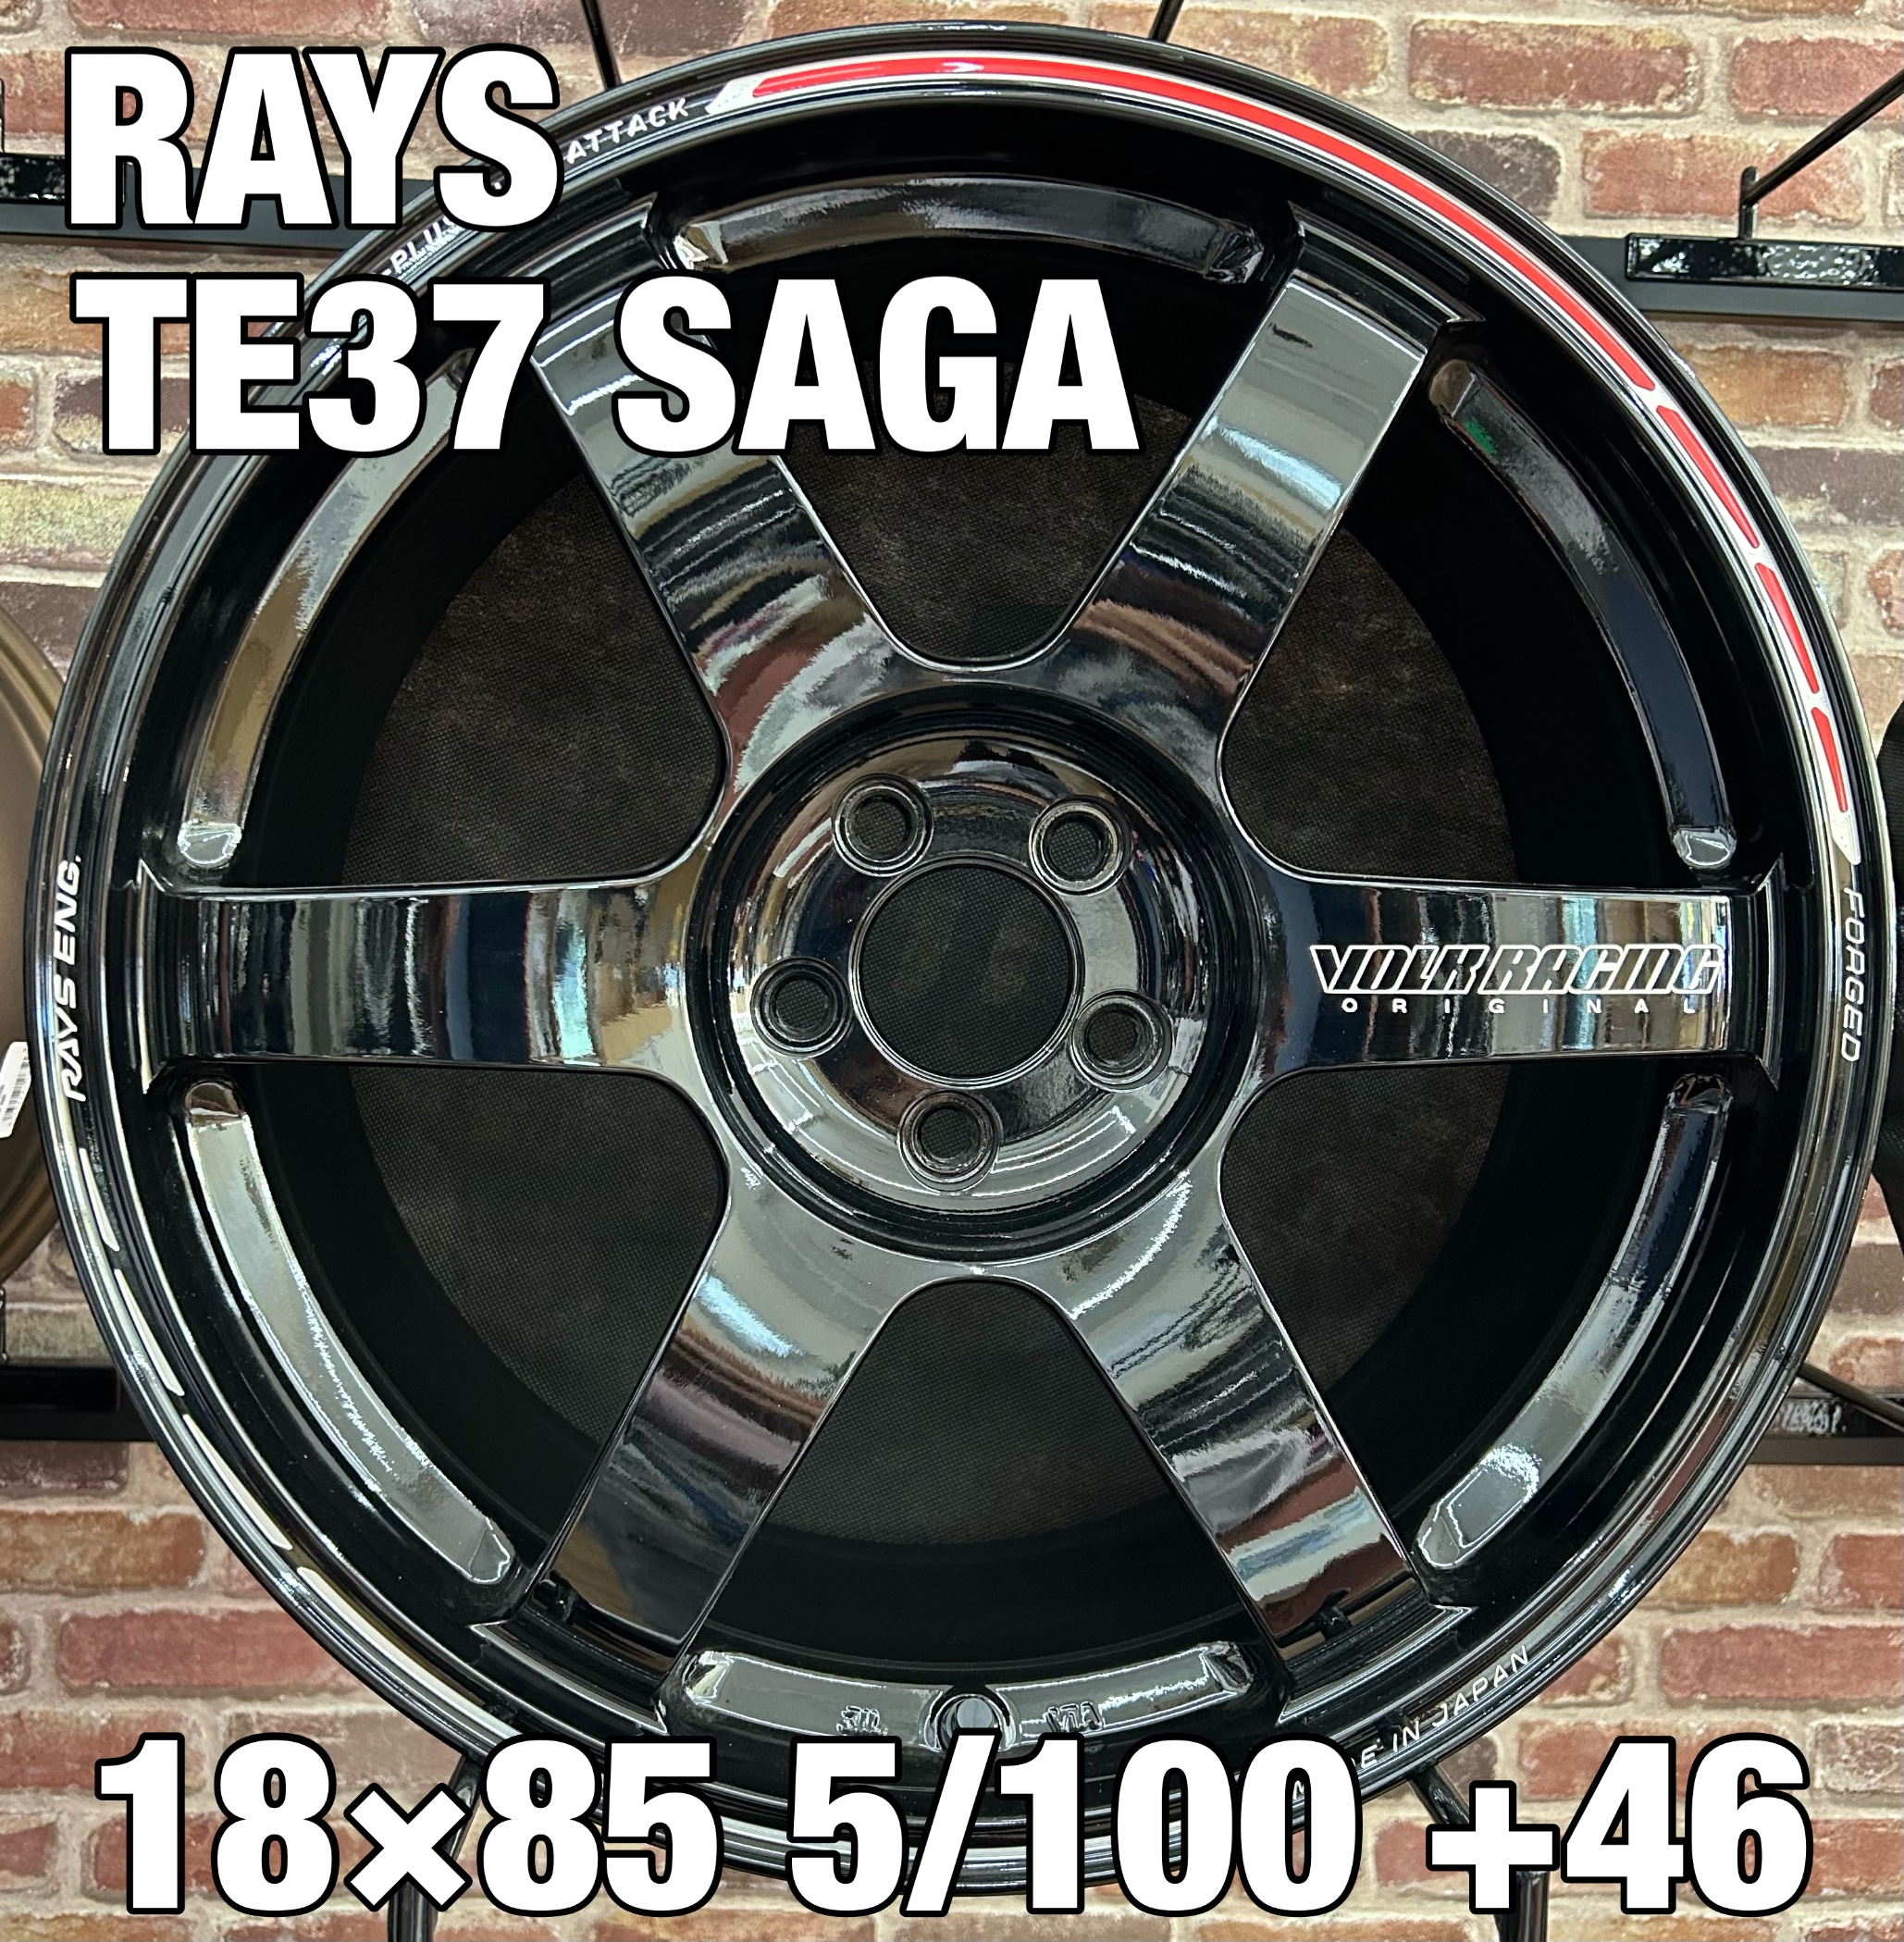 RAYS TE37 SAGA S 18×85 5/100 ＋46